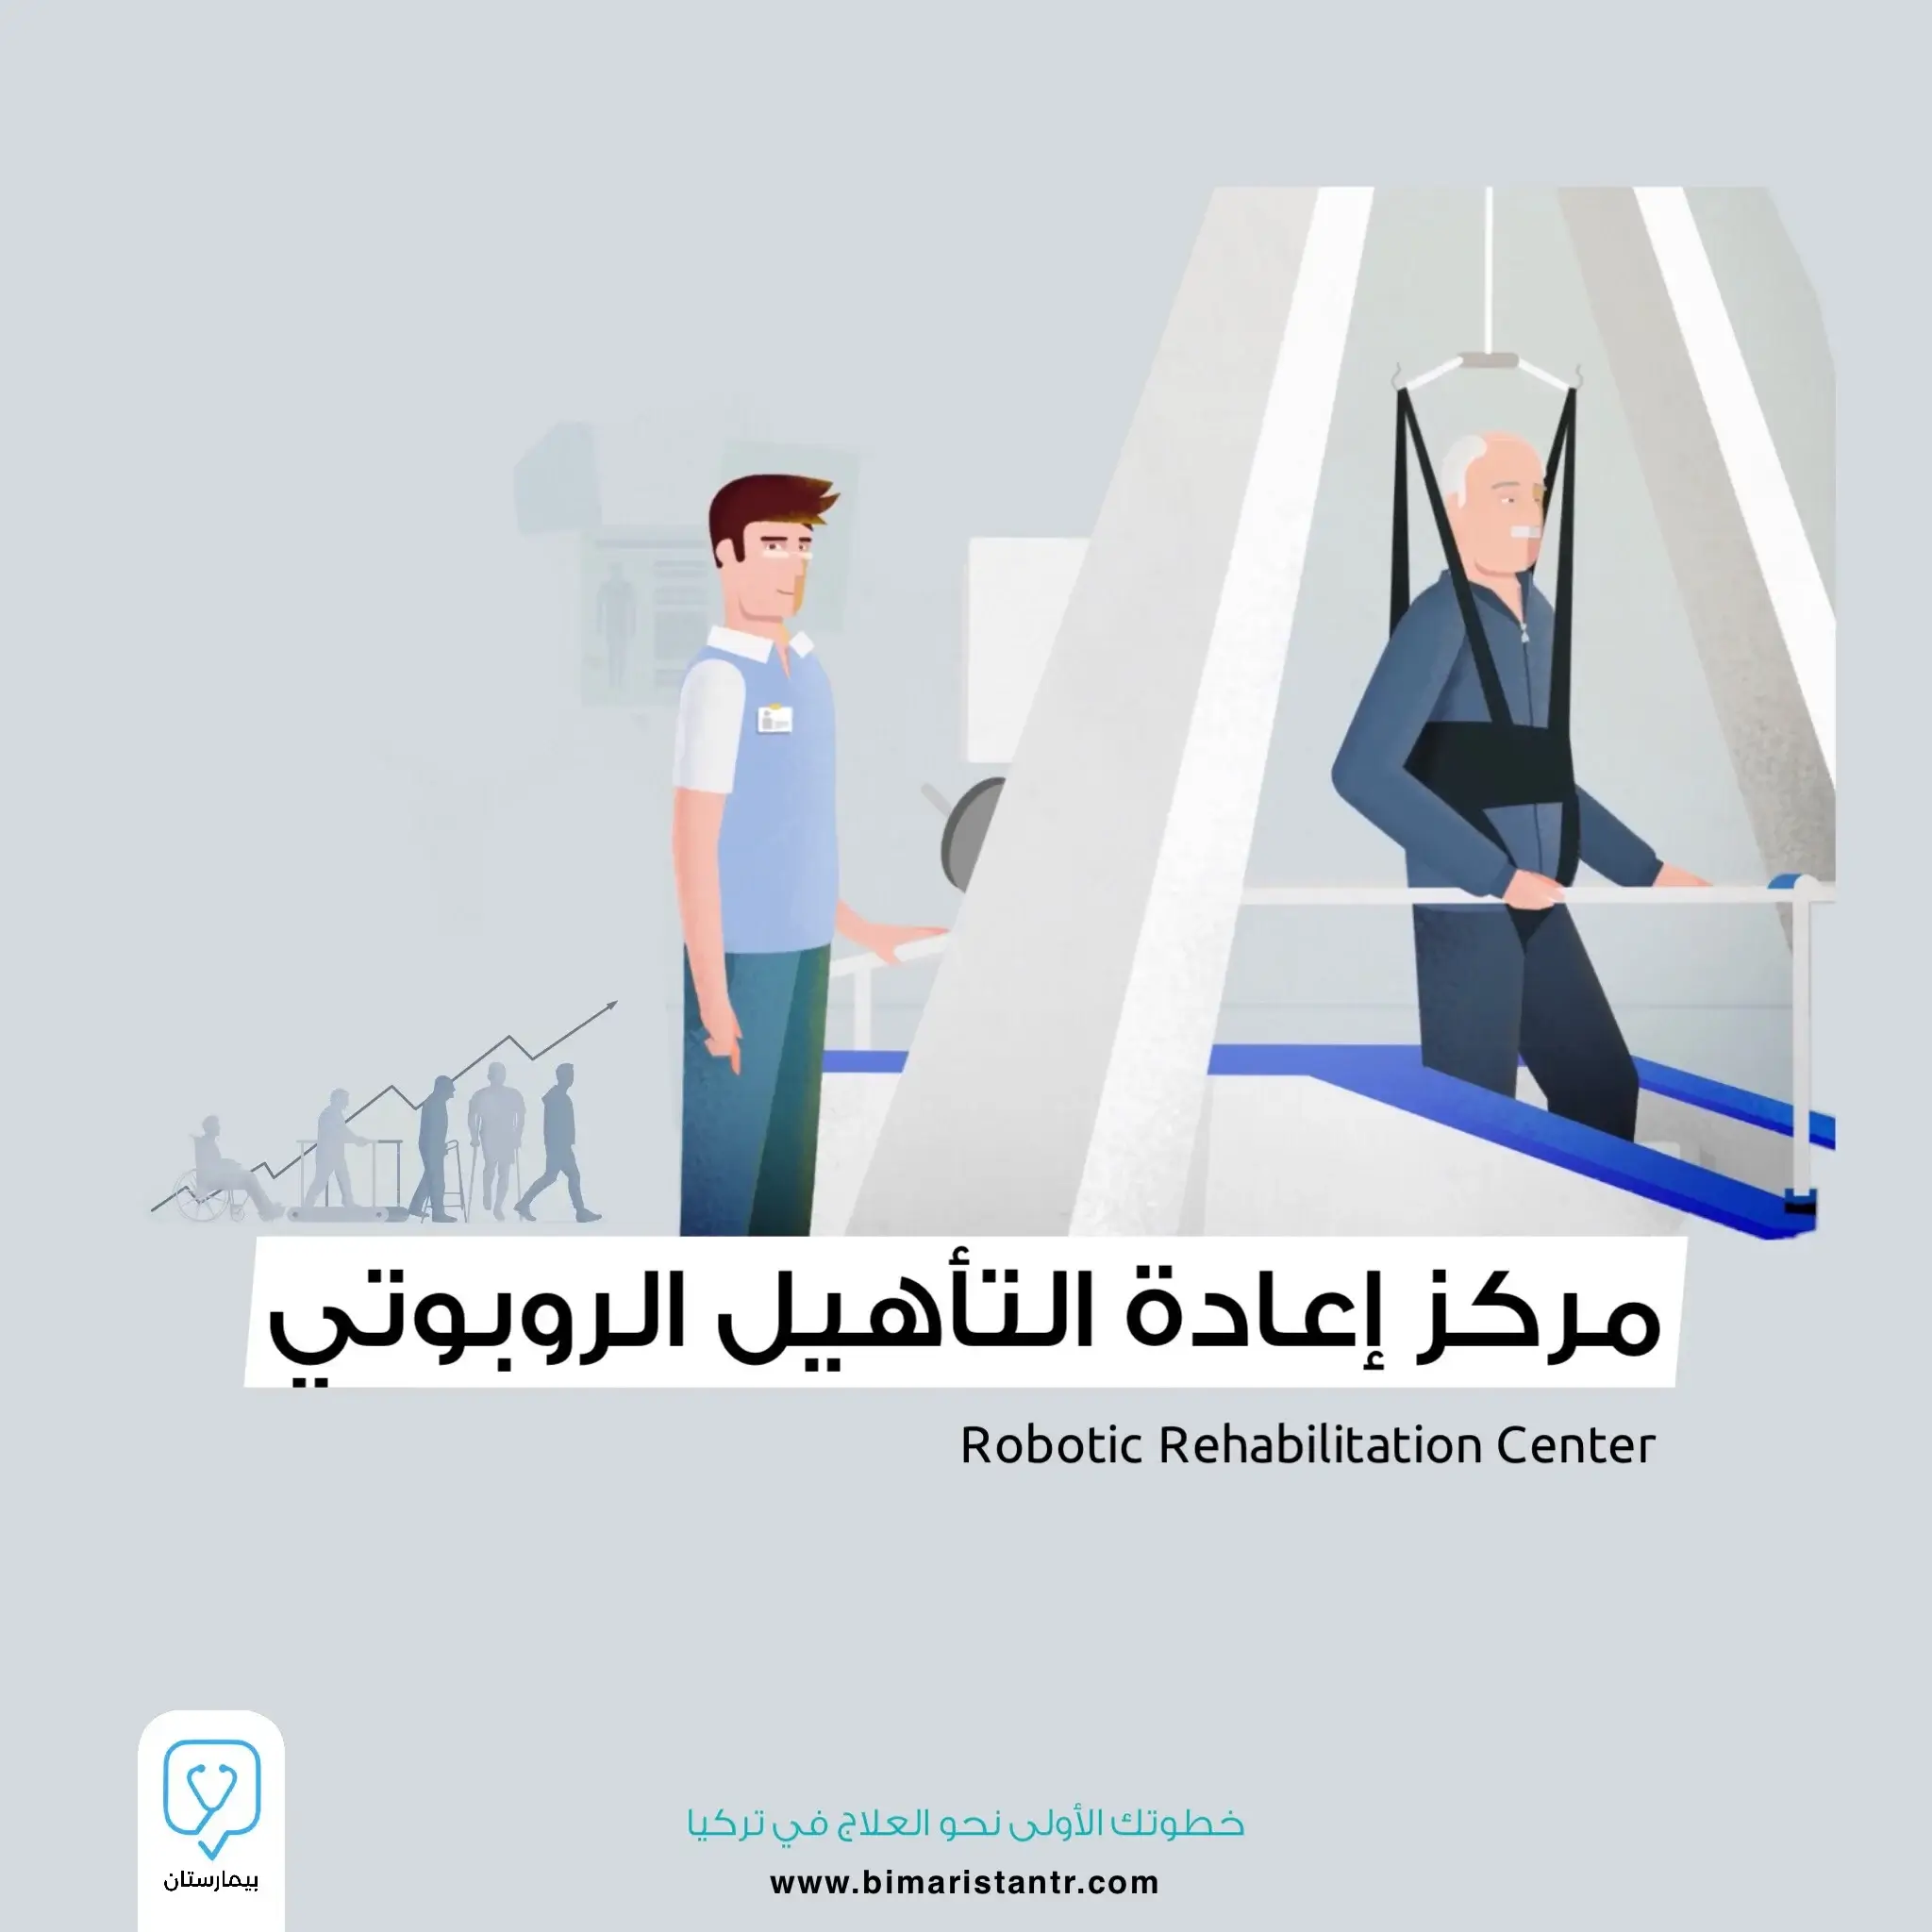 Robotic-rehabilitation center